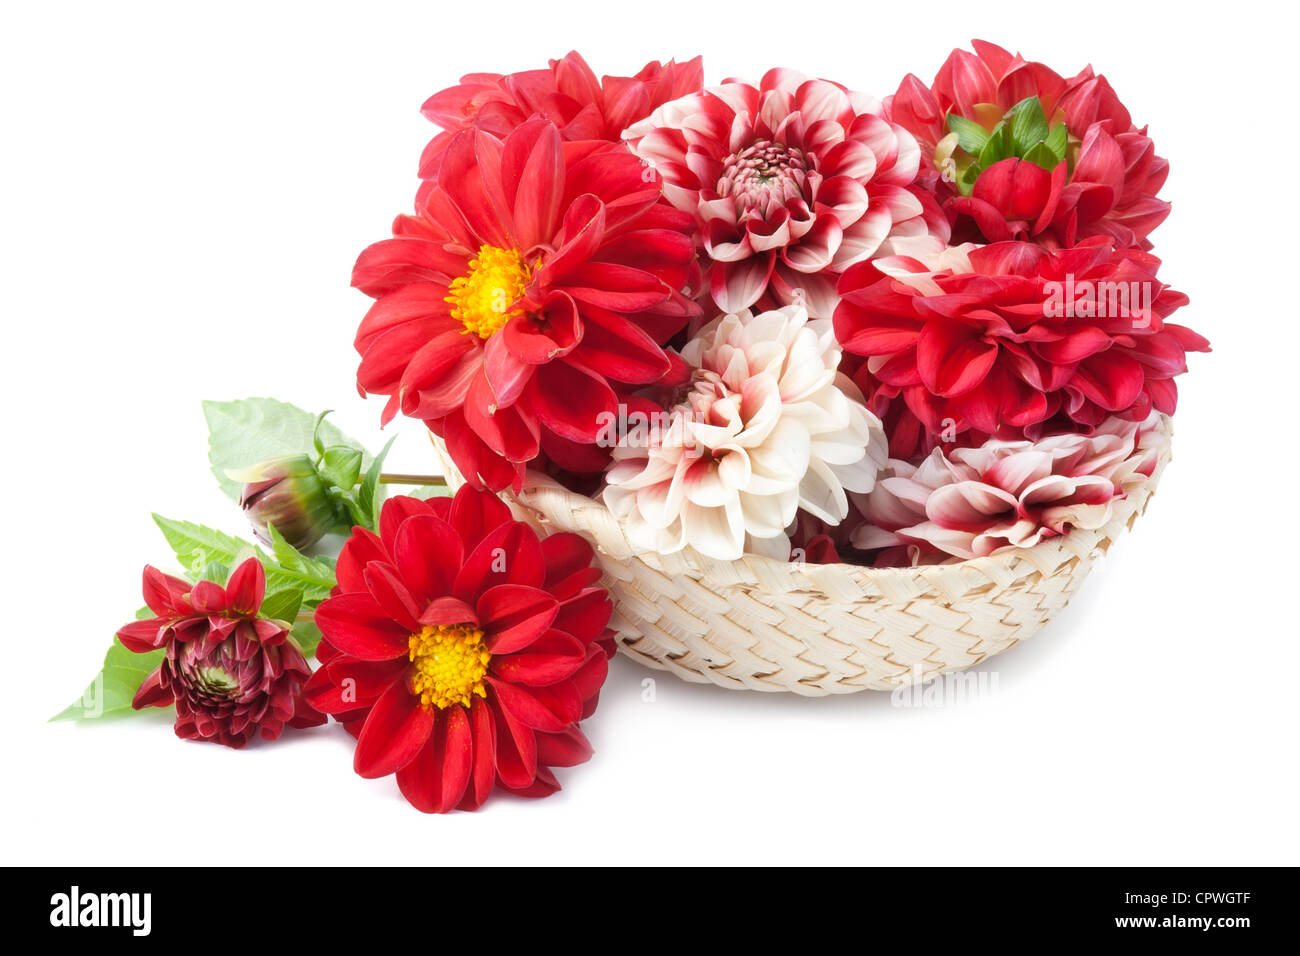 Red Unione dalie fiori in cesto Foto Stock